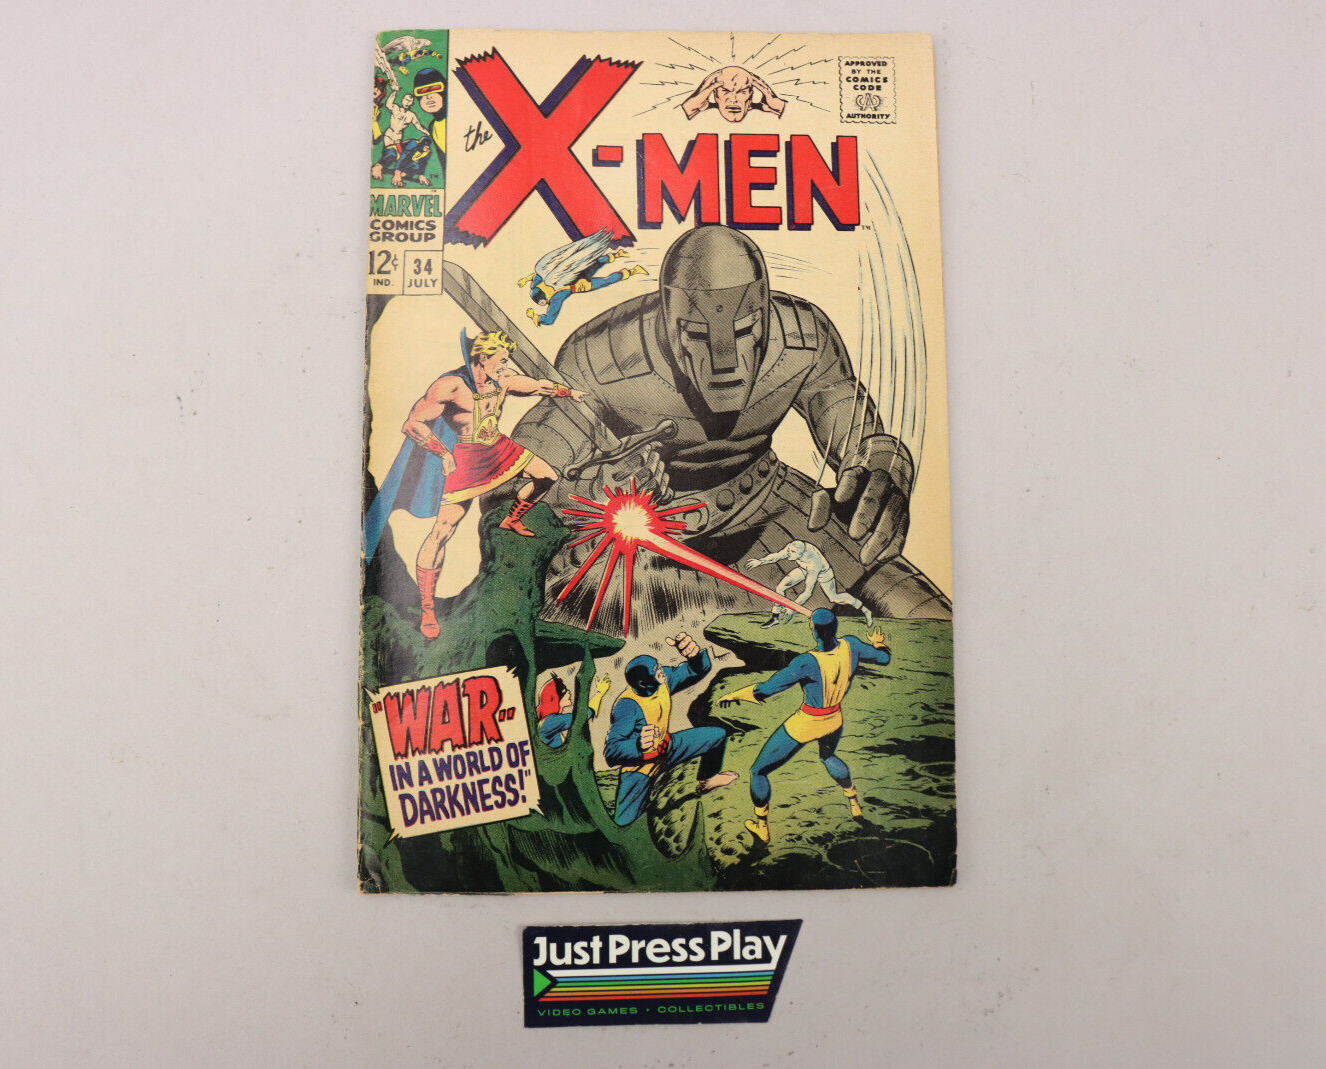 Silver Age X-Men Vol. 1 #34 VG Robot Cover 1967 Marvel Comics